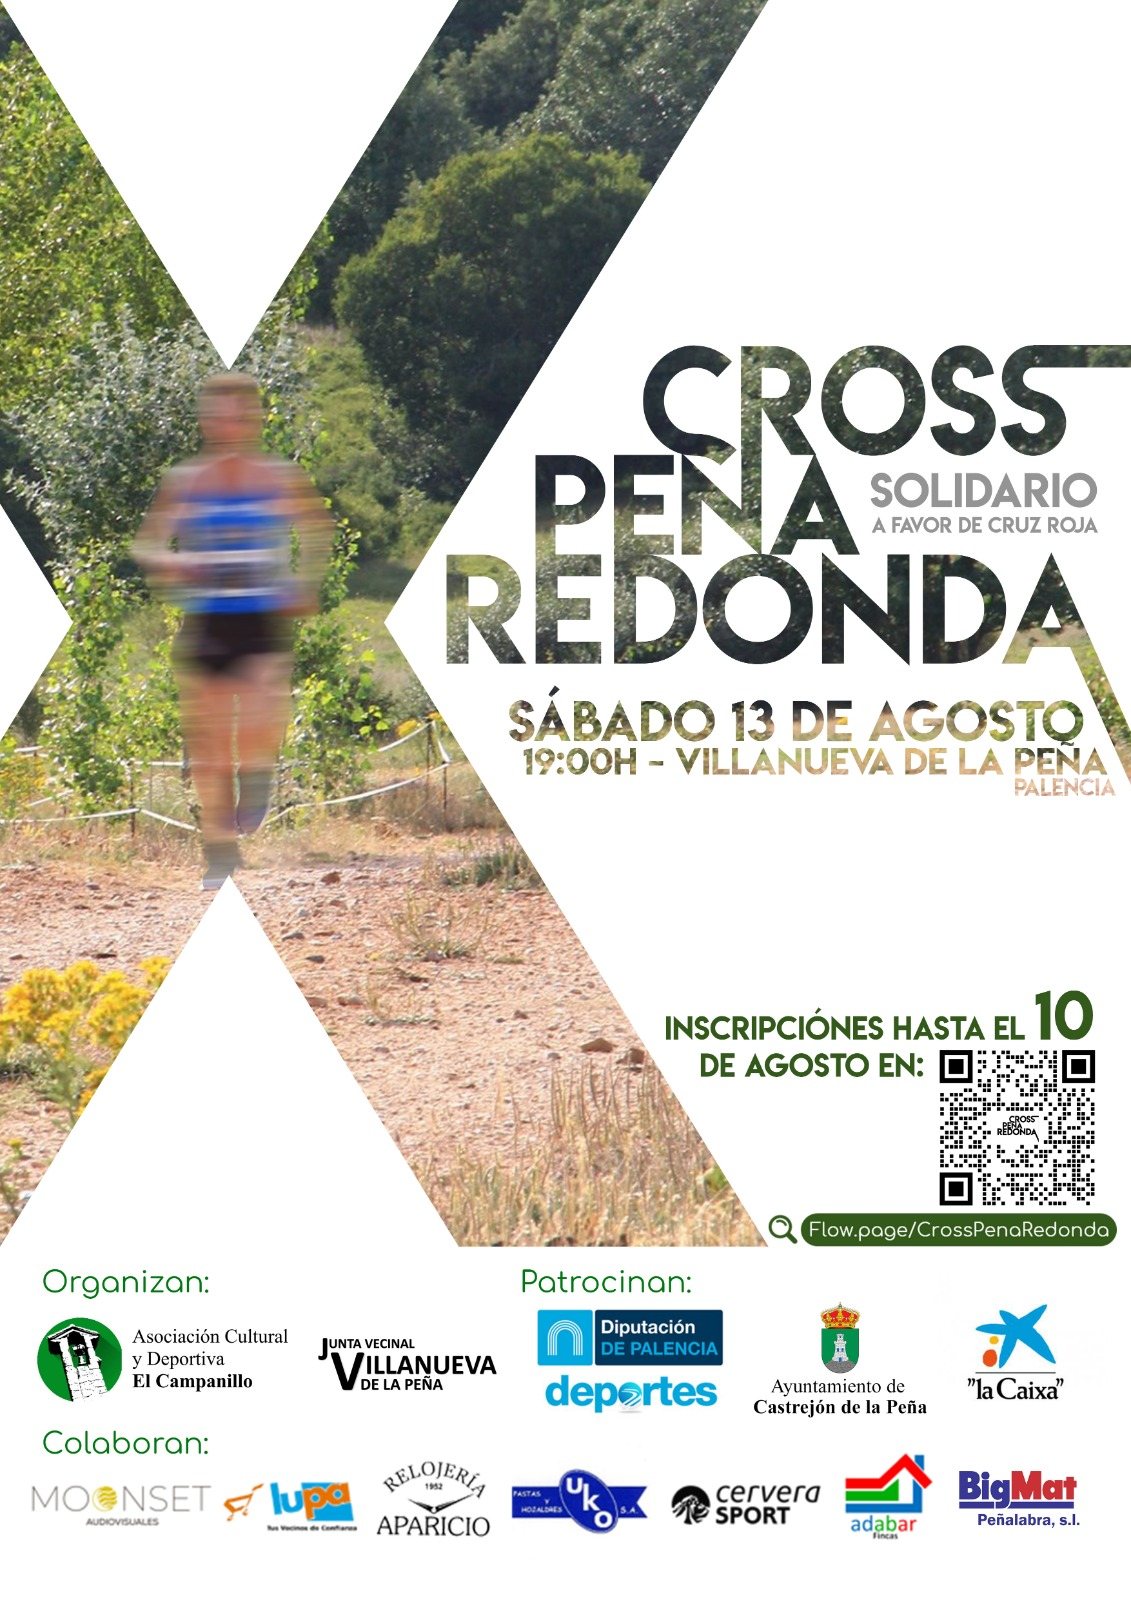 Event Poster X CROSS PEÑA REDONDA SOLIDARIO A FAVOR DE CRUZ ROJA